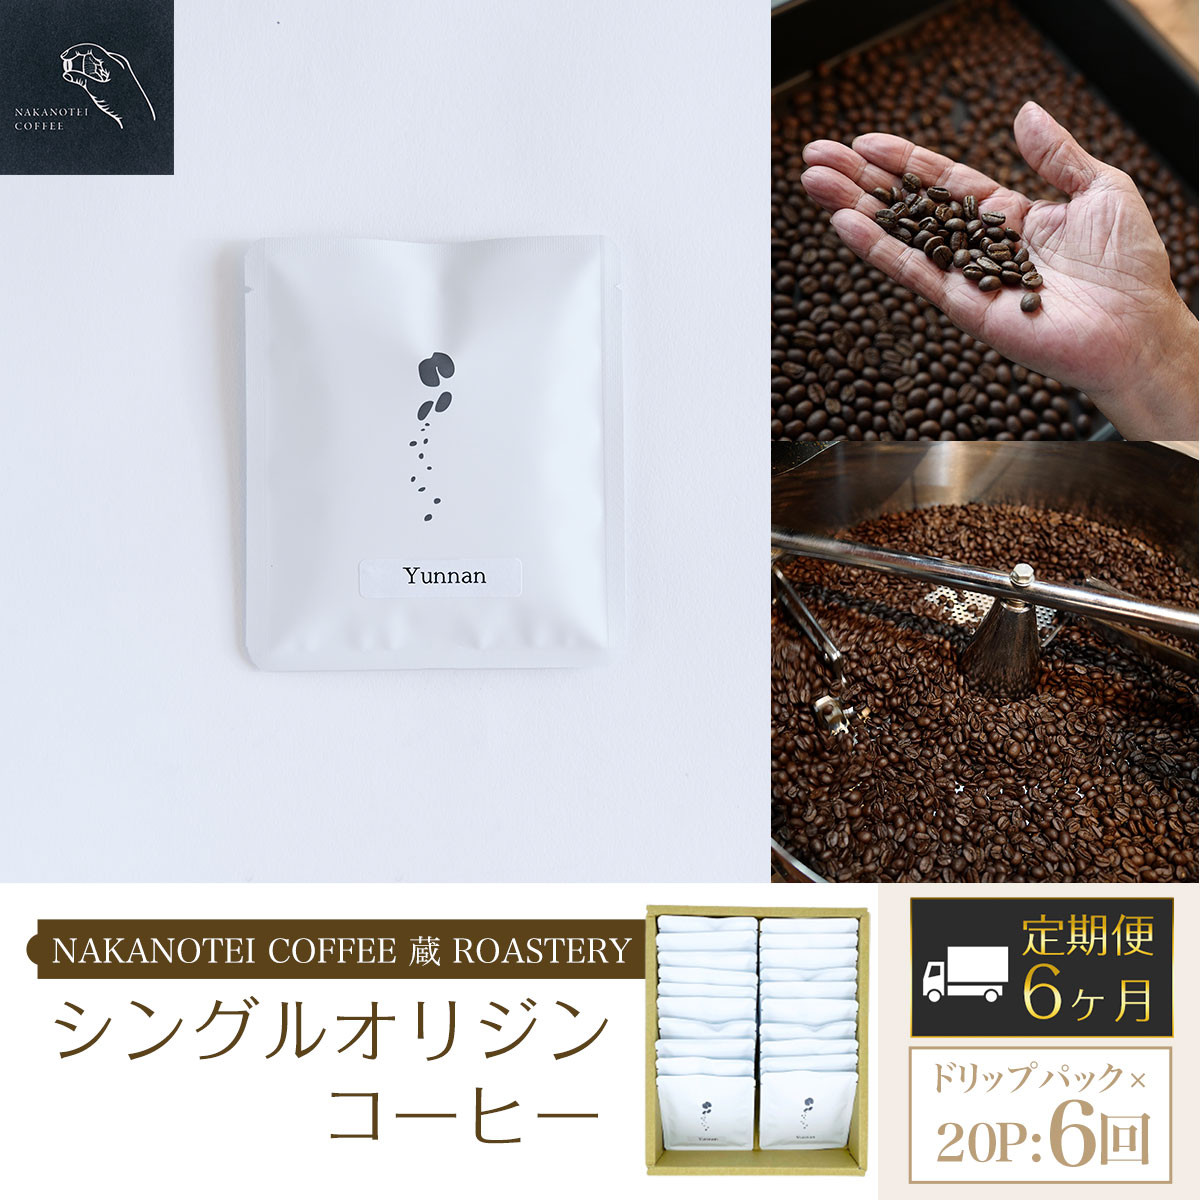 6ヶ月定期便】NAKANOTEI COFFEE 蔵 ROASTERY シングルオリジンコーヒー